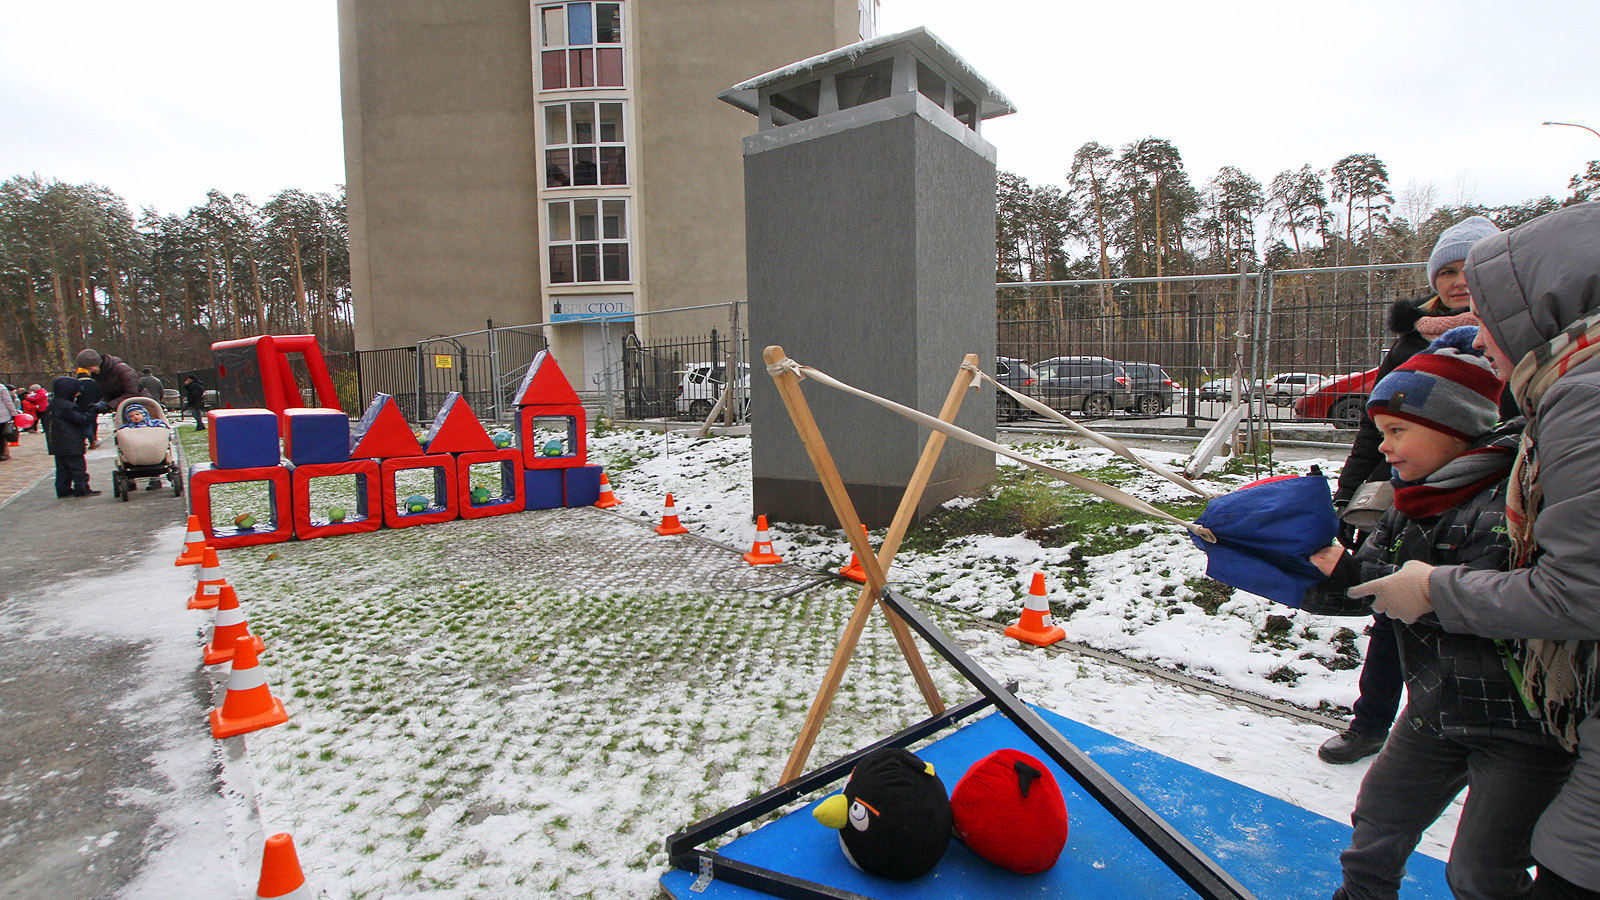 Малыши играли на локации Angry Birds, дети постарше и папы соревновались на площадке «Гол в ворота».